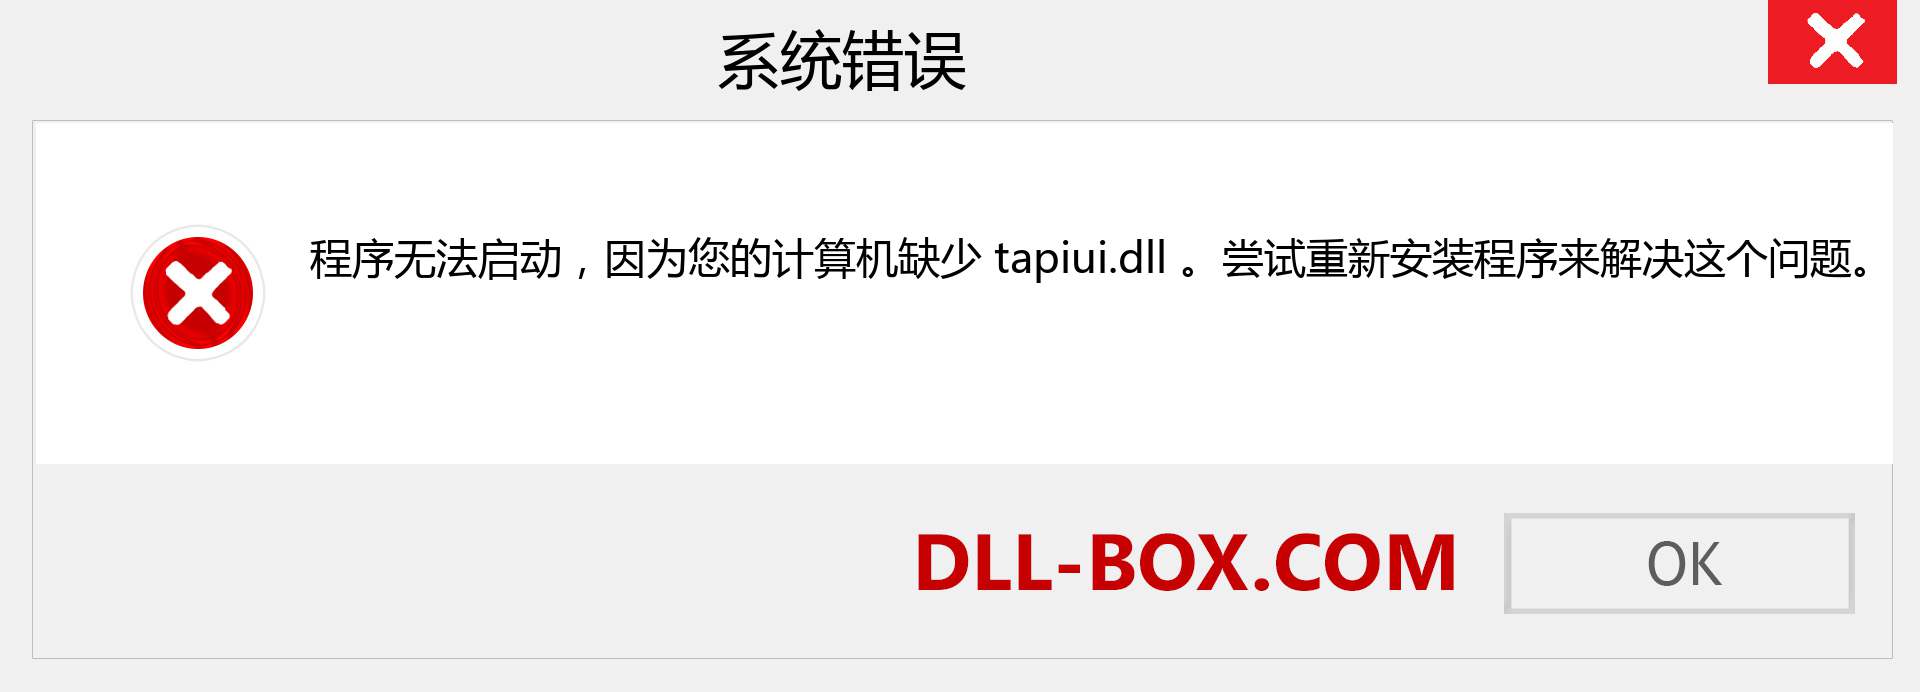 tapiui.dll 文件丢失？。 适用于 Windows 7、8、10 的下载 - 修复 Windows、照片、图像上的 tapiui dll 丢失错误